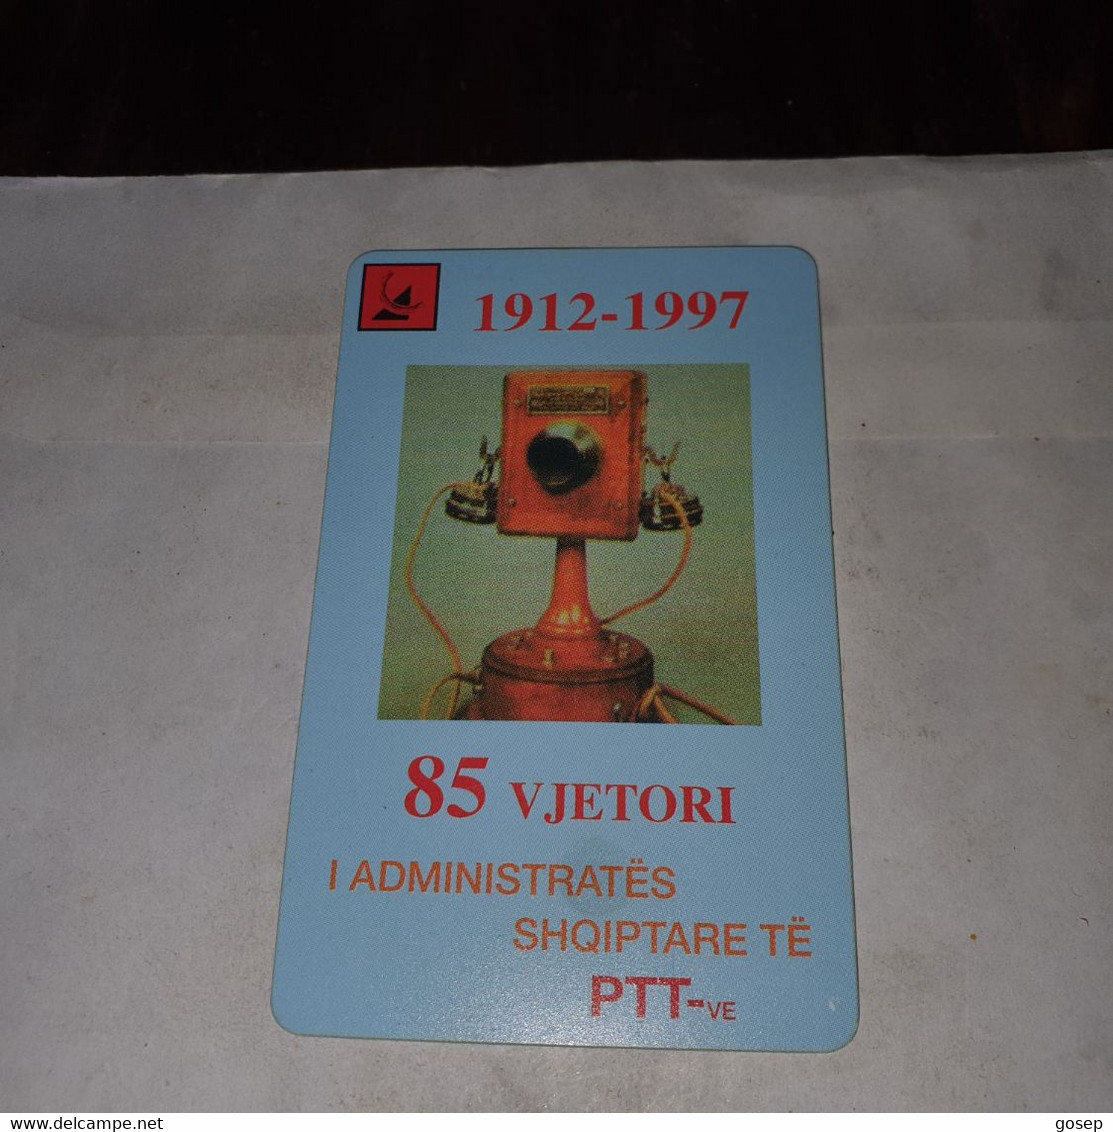 Albania-Stamps/old Telephone-(50impulse)-(13)-(0500774476)-tirage-?-used Card+1card Prepiad Free - Albania